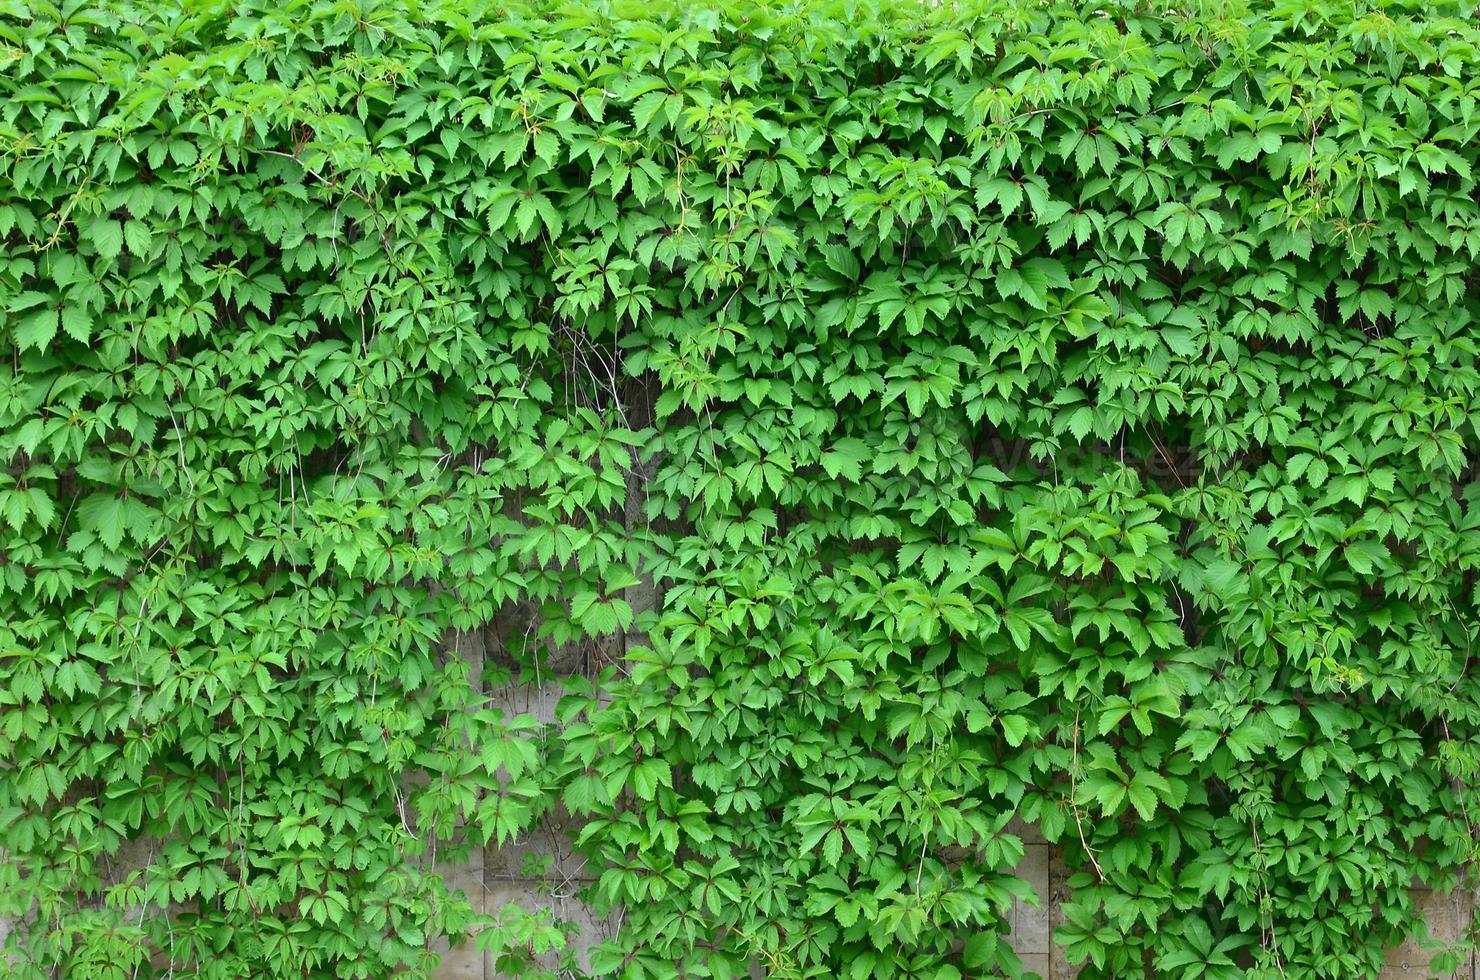 la hiedra verde crece a lo largo de la pared beige de azulejos pintados. textura de densos matorrales de hiedra silvestre foto